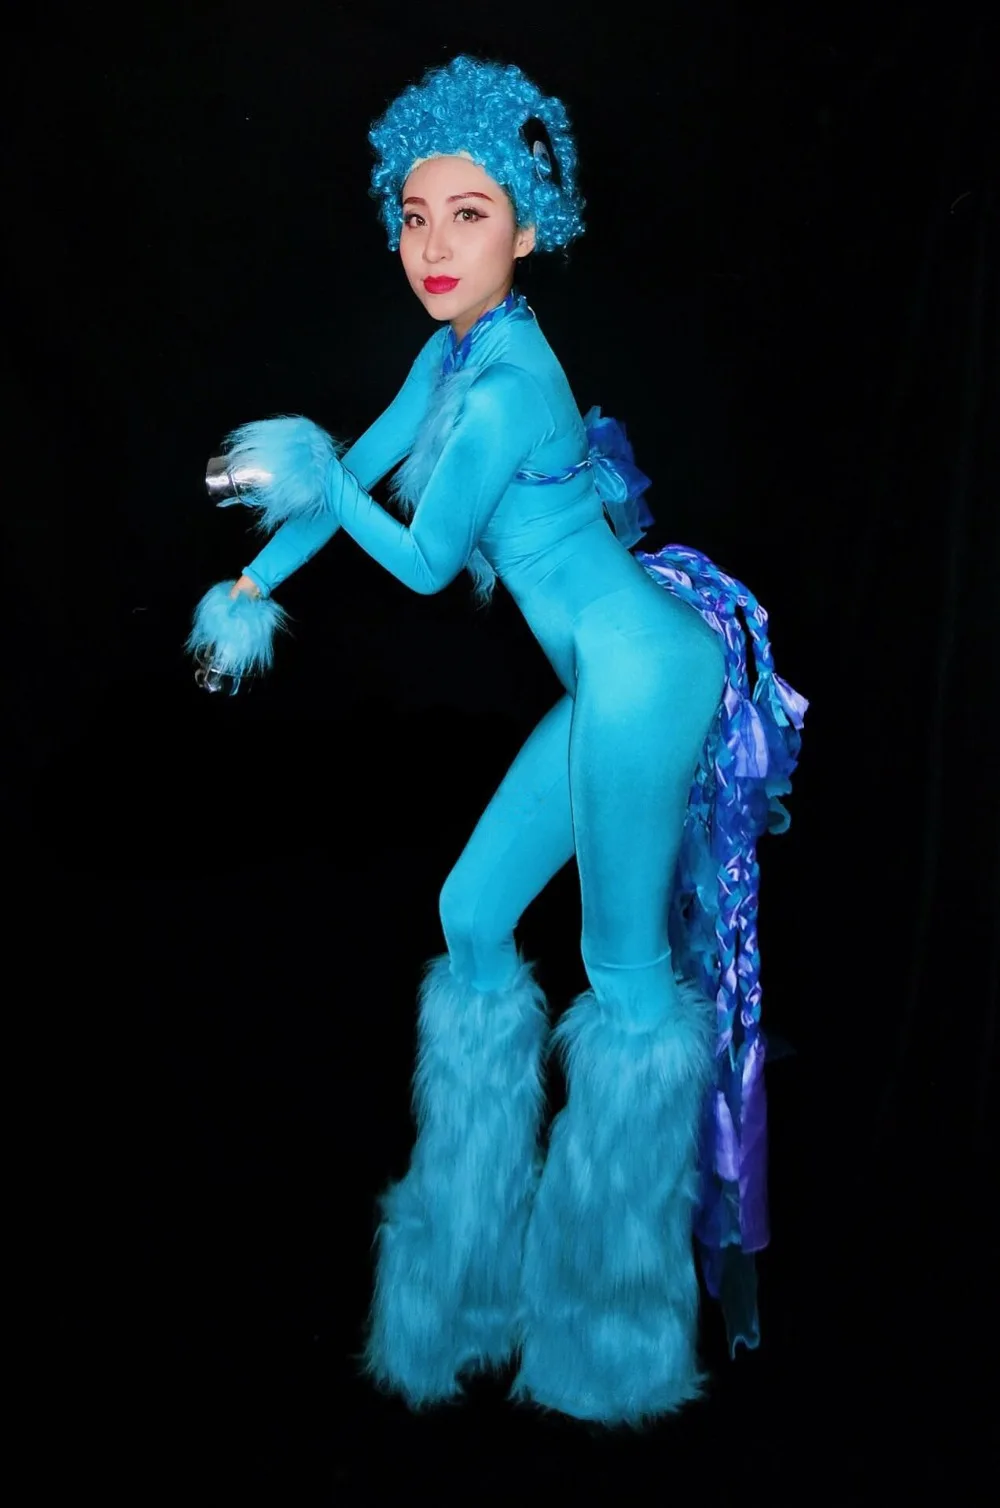 Женский костюм для ролевых игр в цирке, розовый, синий, с перьями, трико, Комбинезоны для ночного клуба, DJ, певица, сексуальная сценическая цельная одежда для выступлений